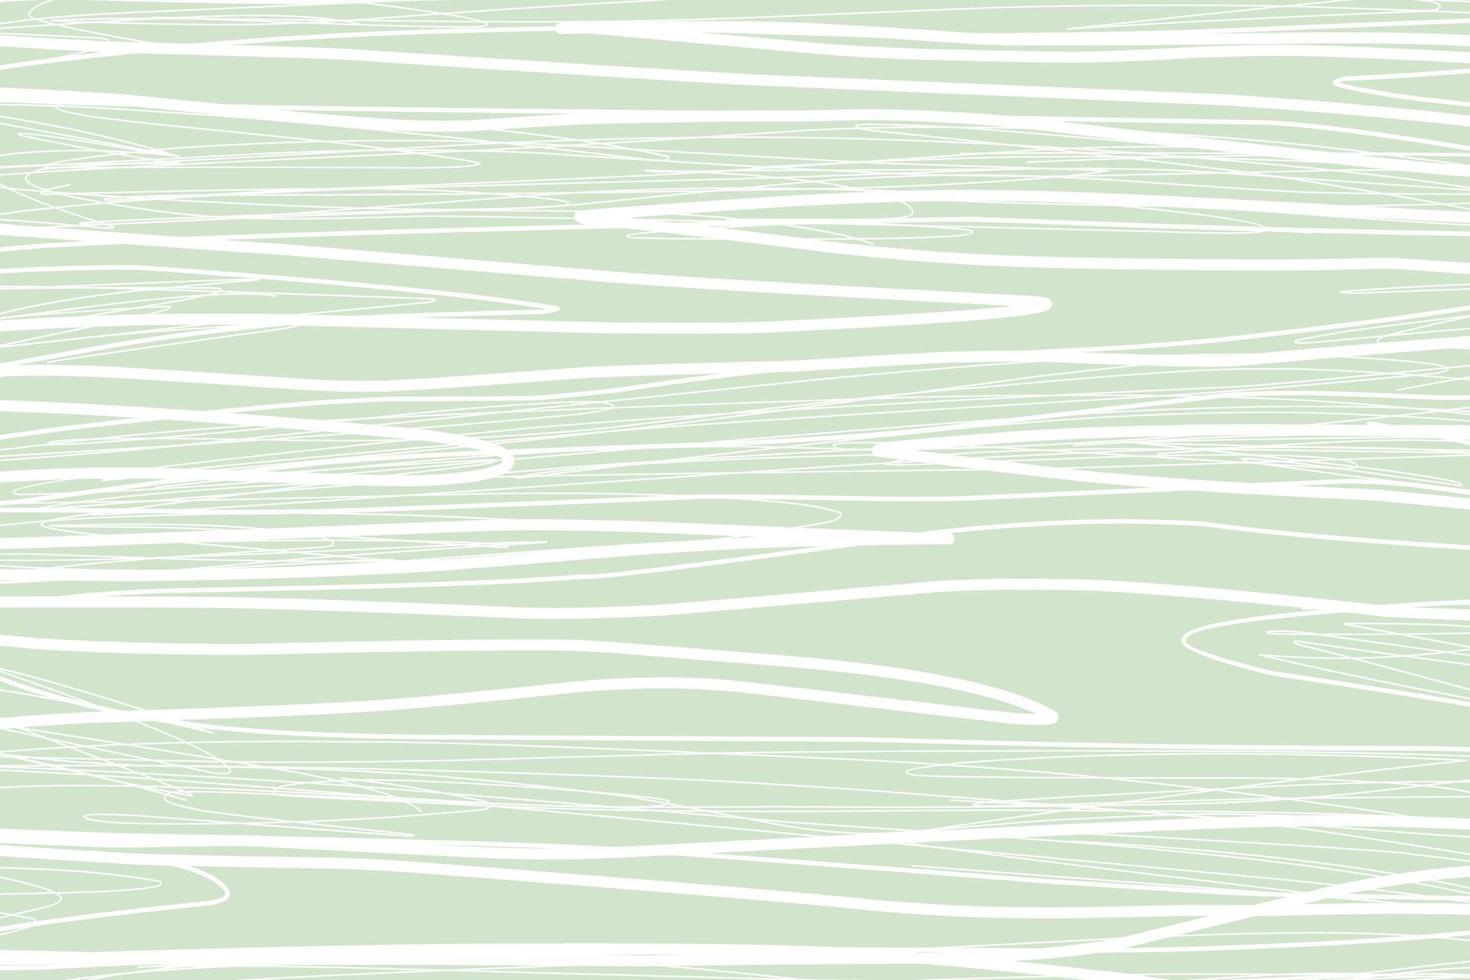 stylische Vorlagen mit organischen abstrakten Formen und Linien in Nude-Farben. Pastellhintergrund im minimalistischen Stil. zeitgenössische Vektorillustration vektor